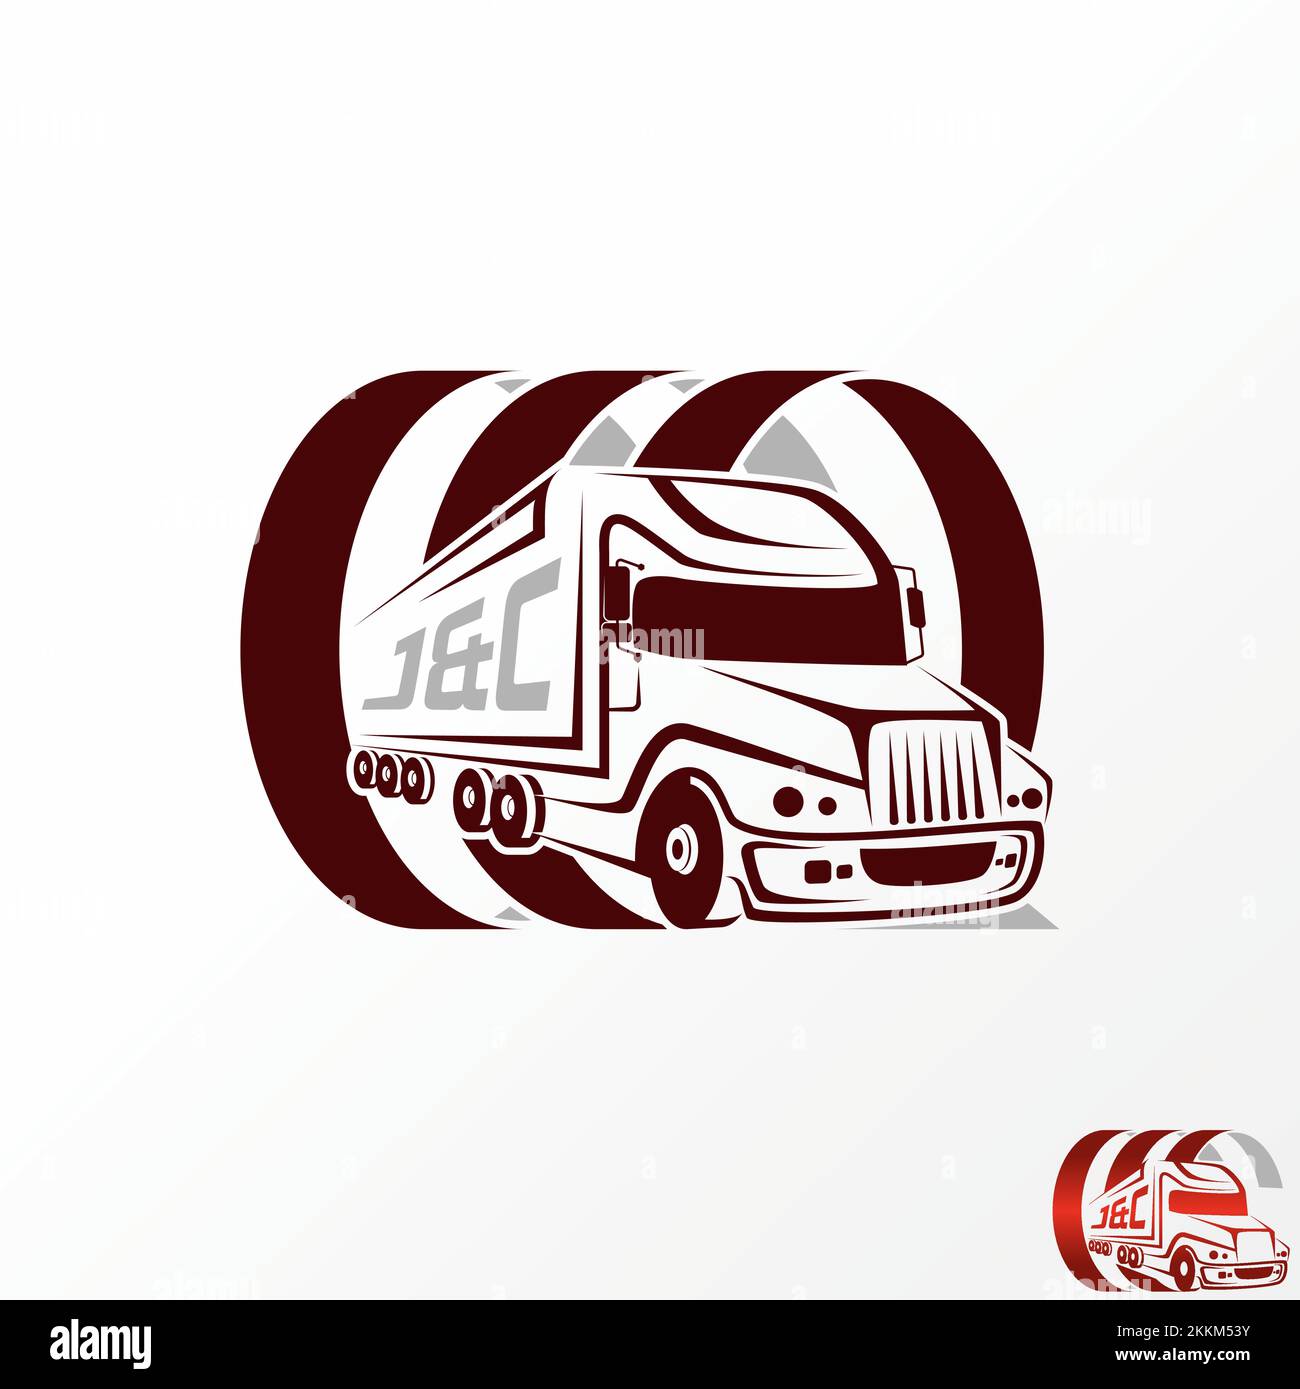 Einzigartige LKW-Frachtcontainer-Lieferung mit kreisförmigem Grafiksymbol Logo Design abstraktes Konzept Vektormaterial. Bezogen auf Transport oder Fahrer Stock Vektor